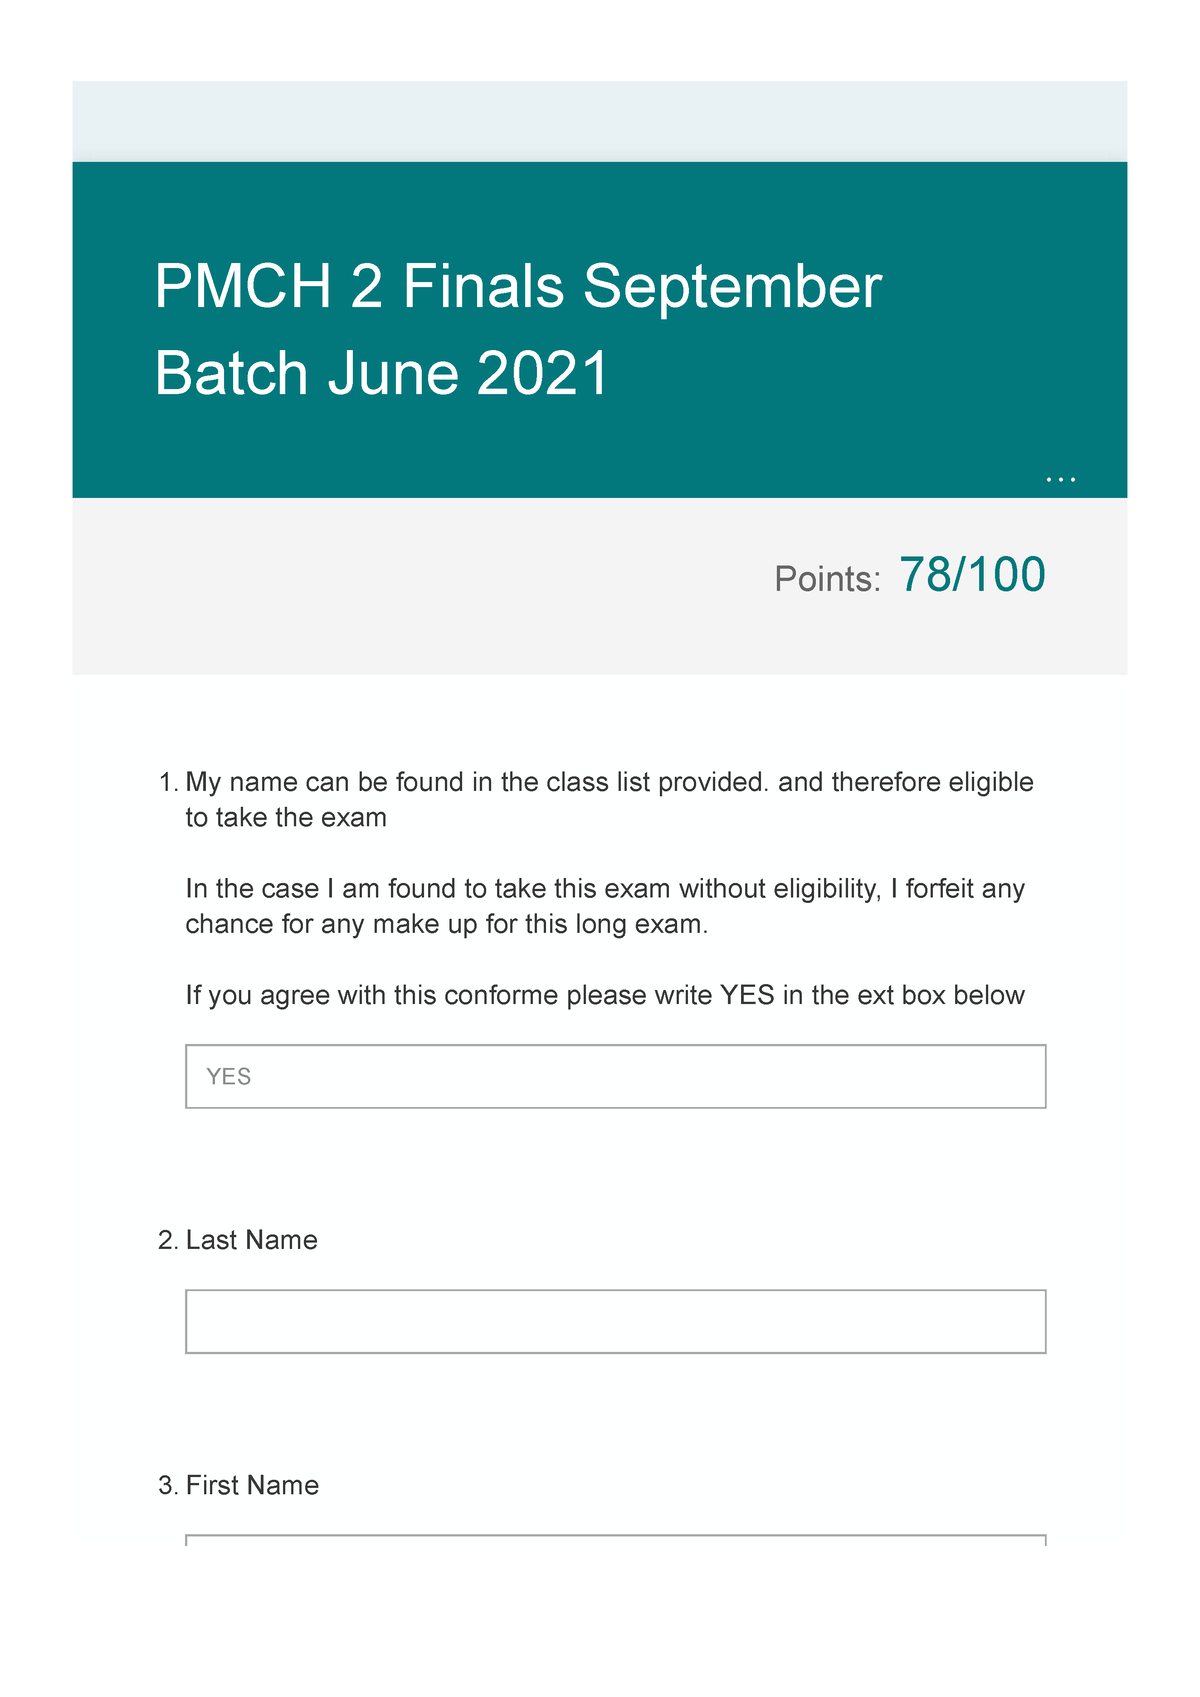 PMCH 2 Finals September Batch June 2021 Points 78/ PMCH 2 Finals